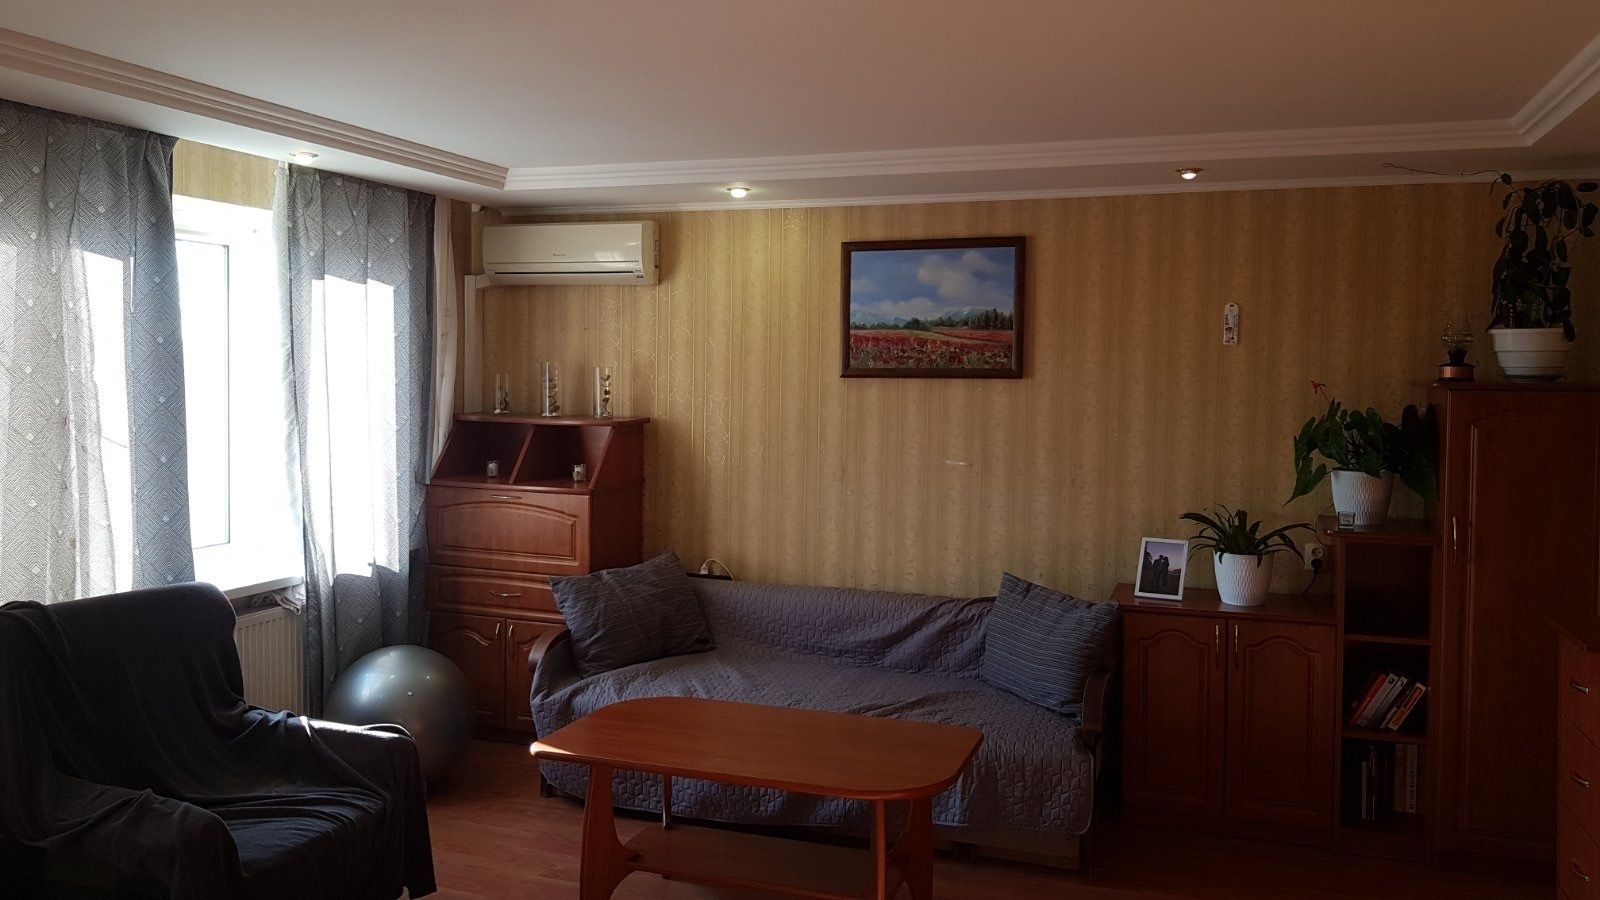 Терміново продається 3-кімнатна квартира в центрі Ужгорода.